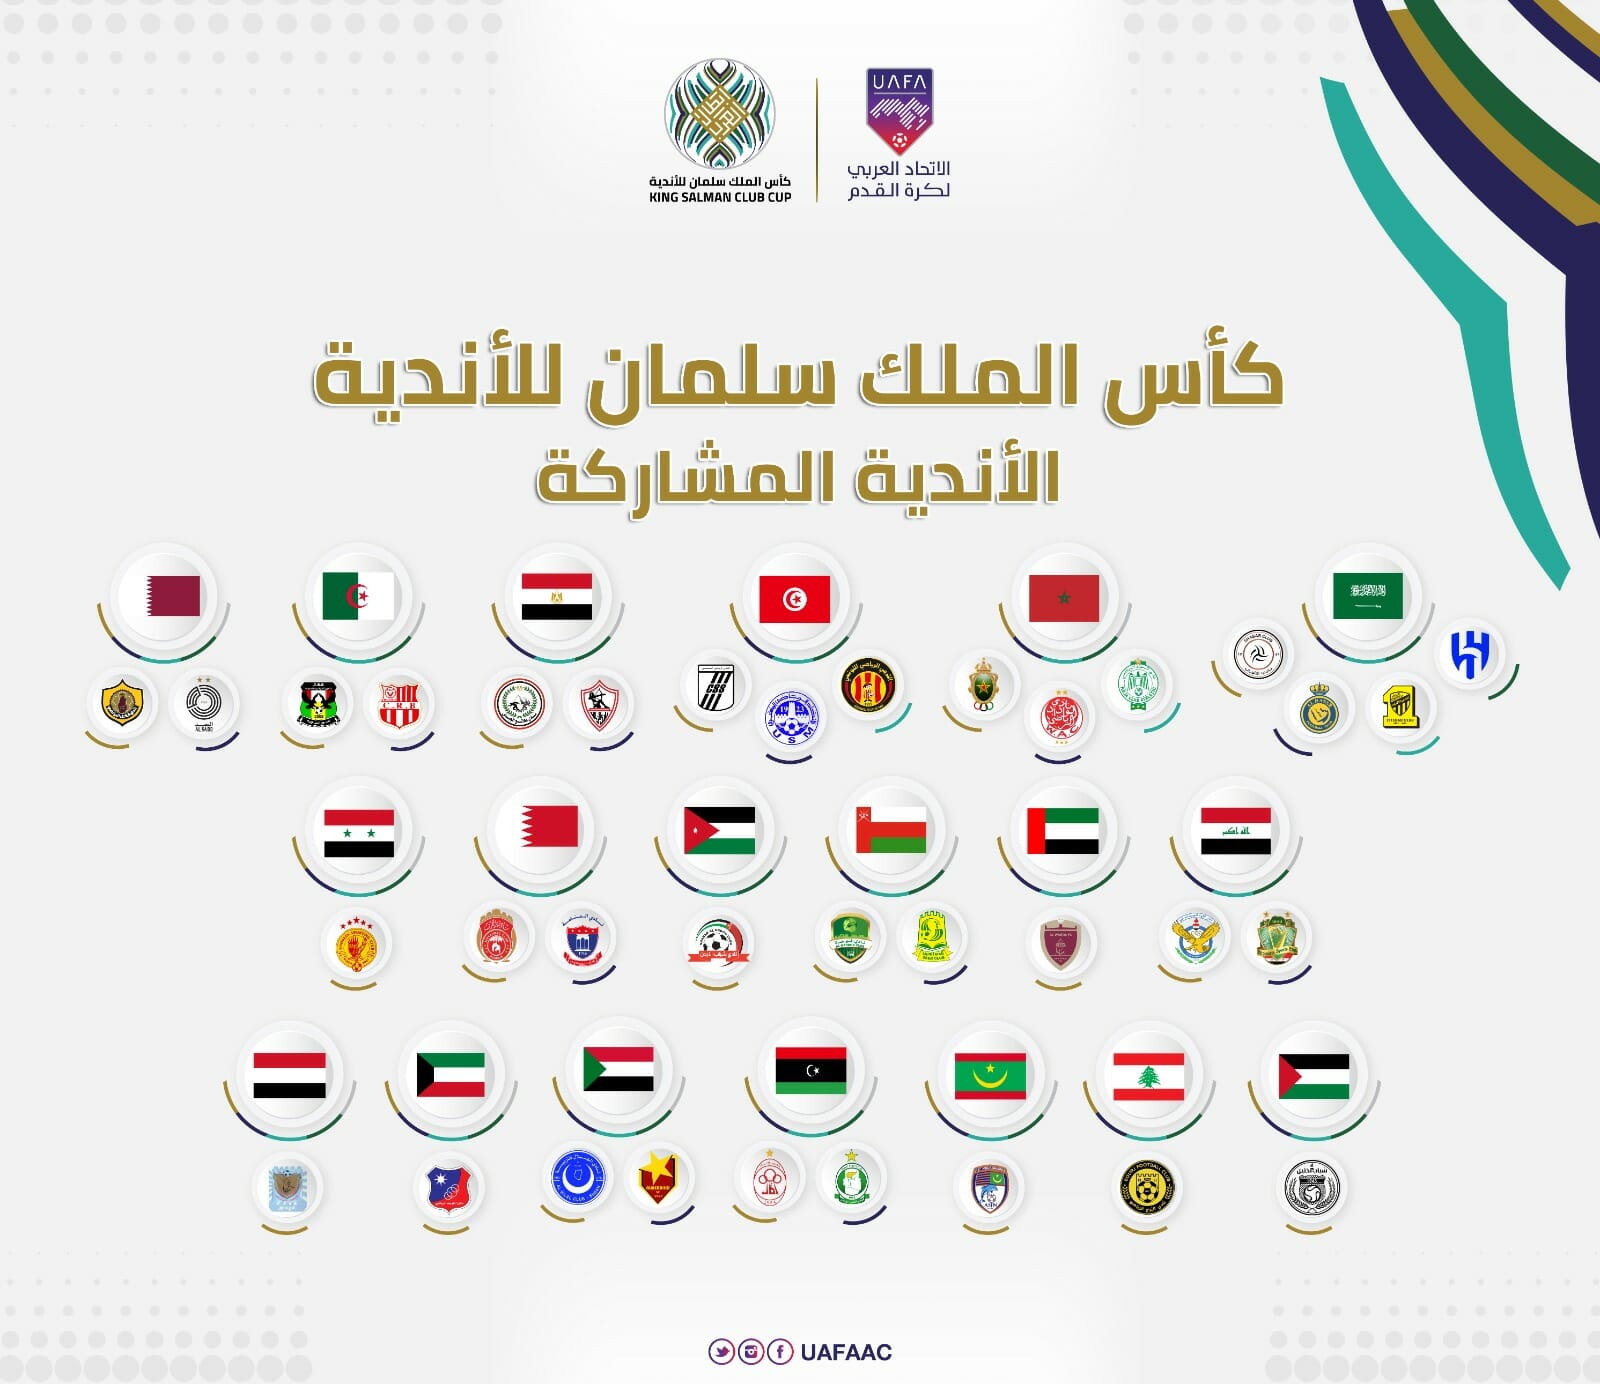 الأندية العربية المشاركة في كأس الملك سلمان 2023